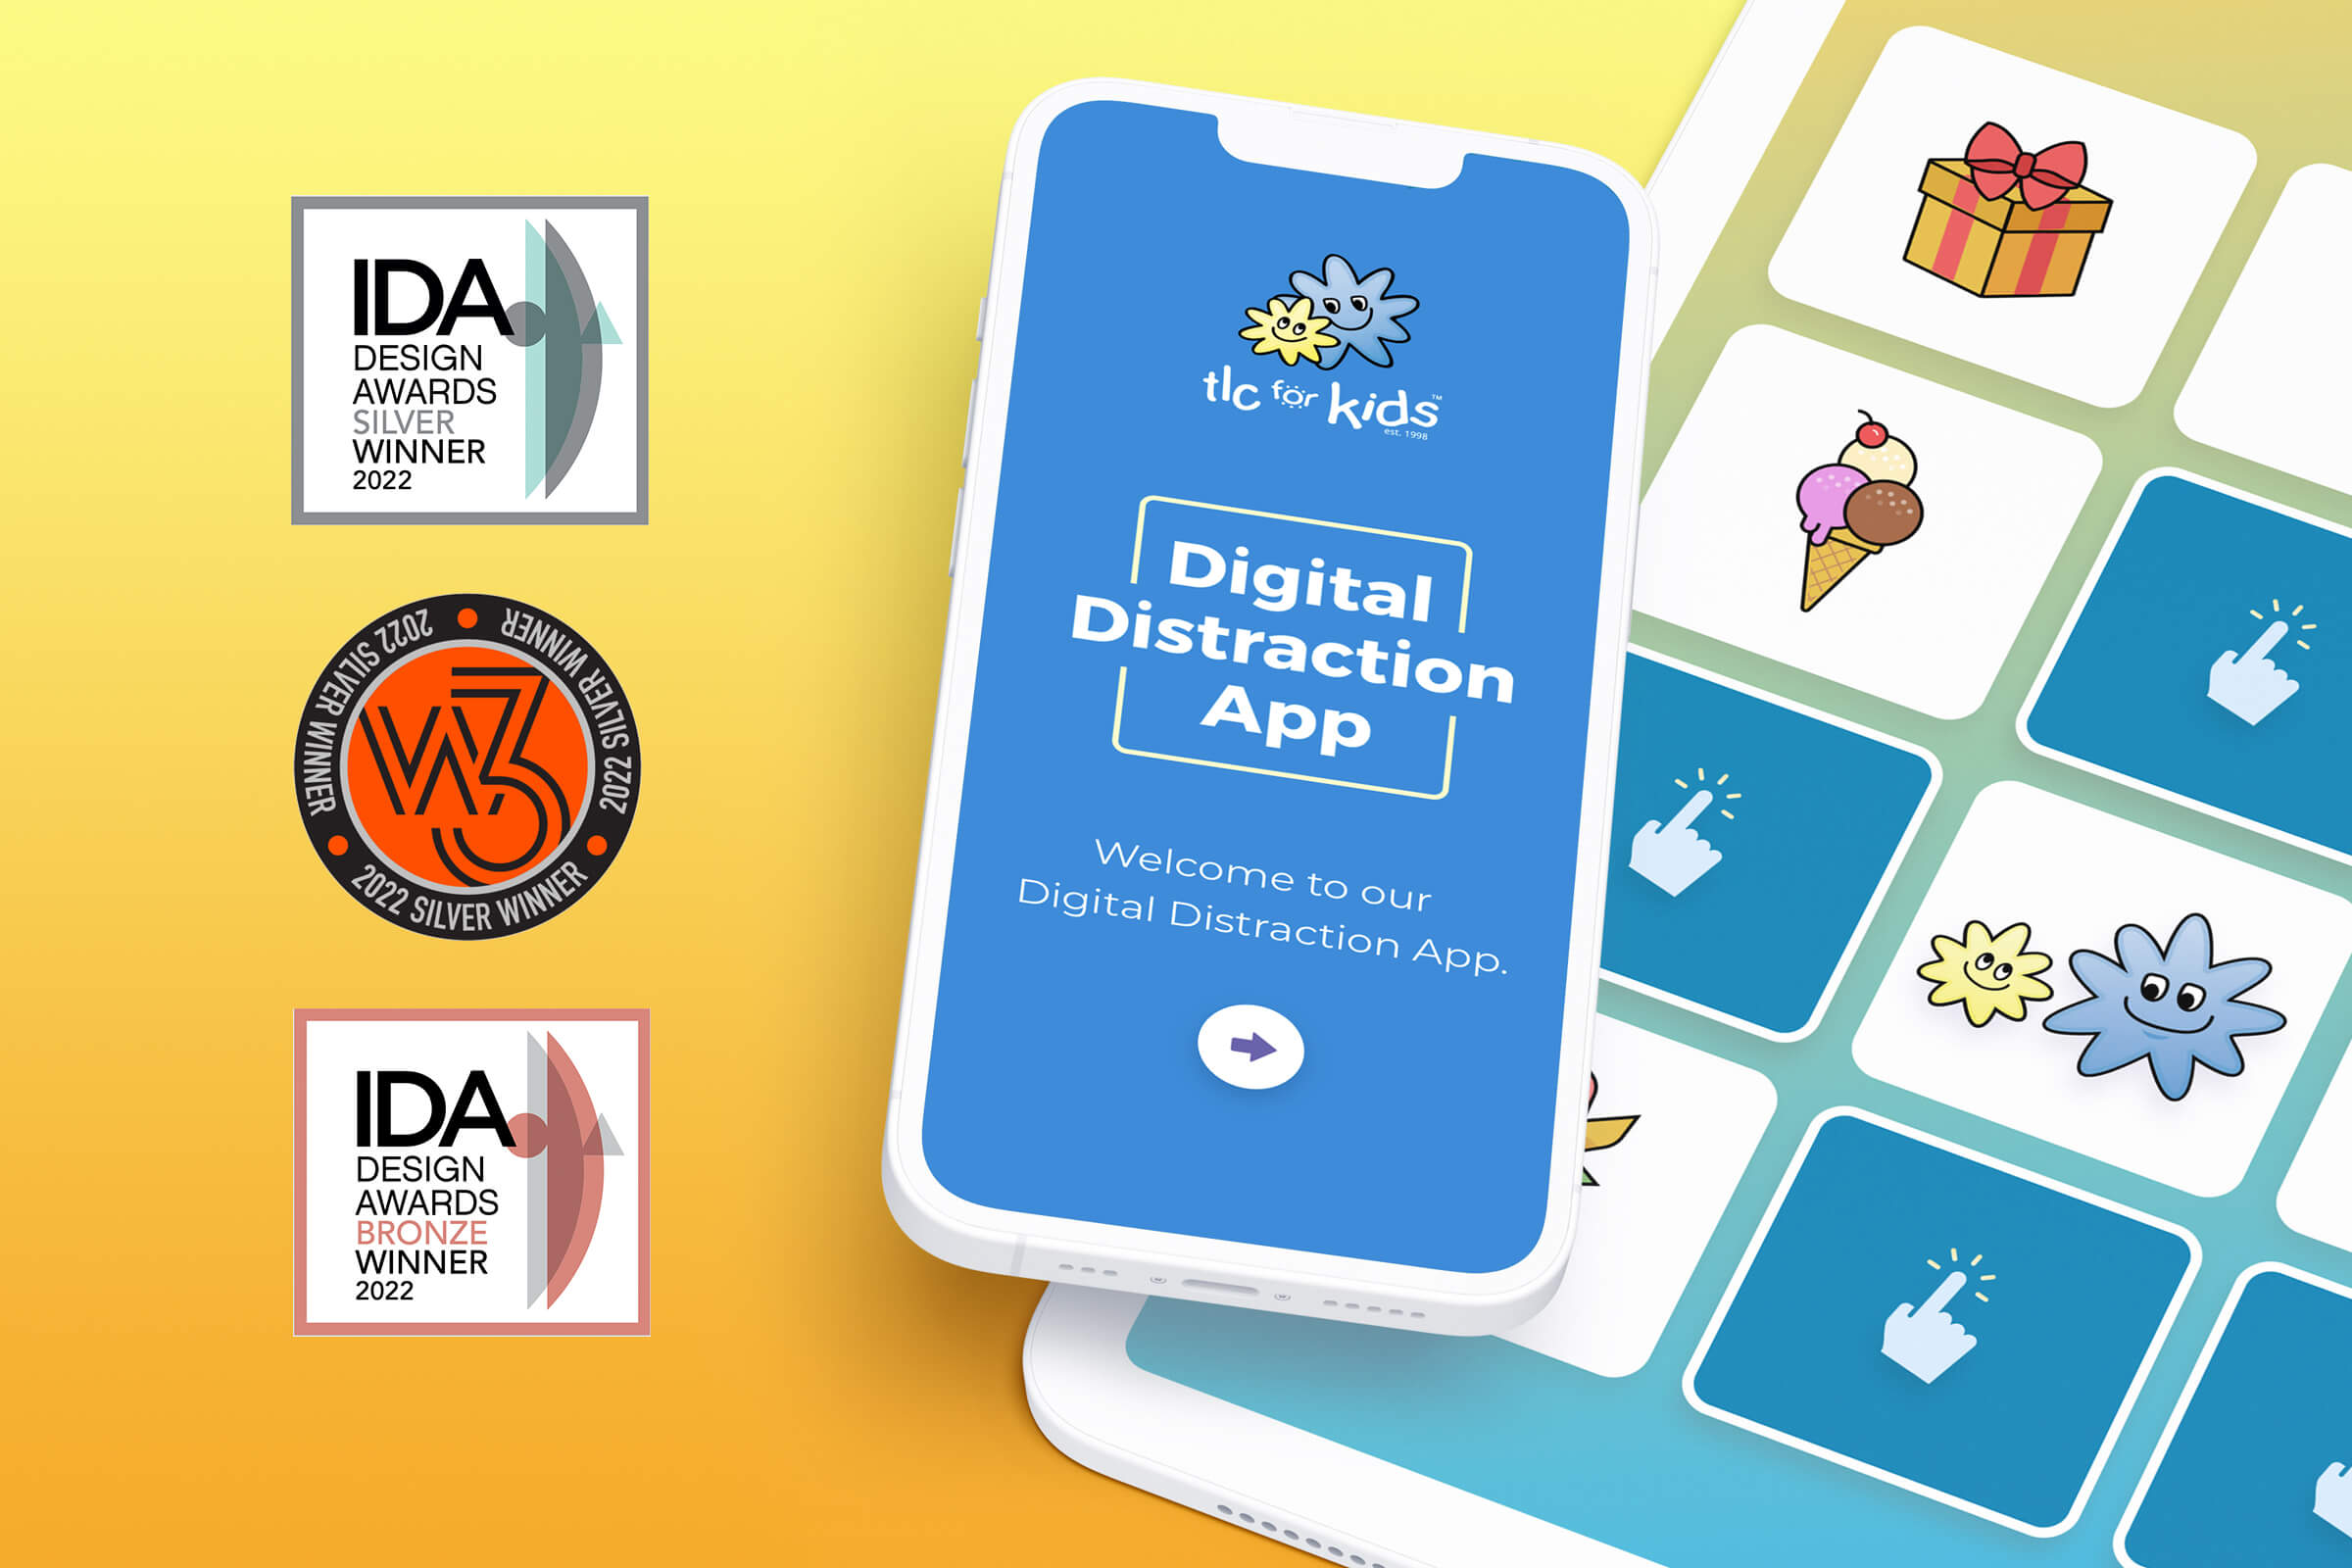 TLC for Kids Digital Distraction App global awards